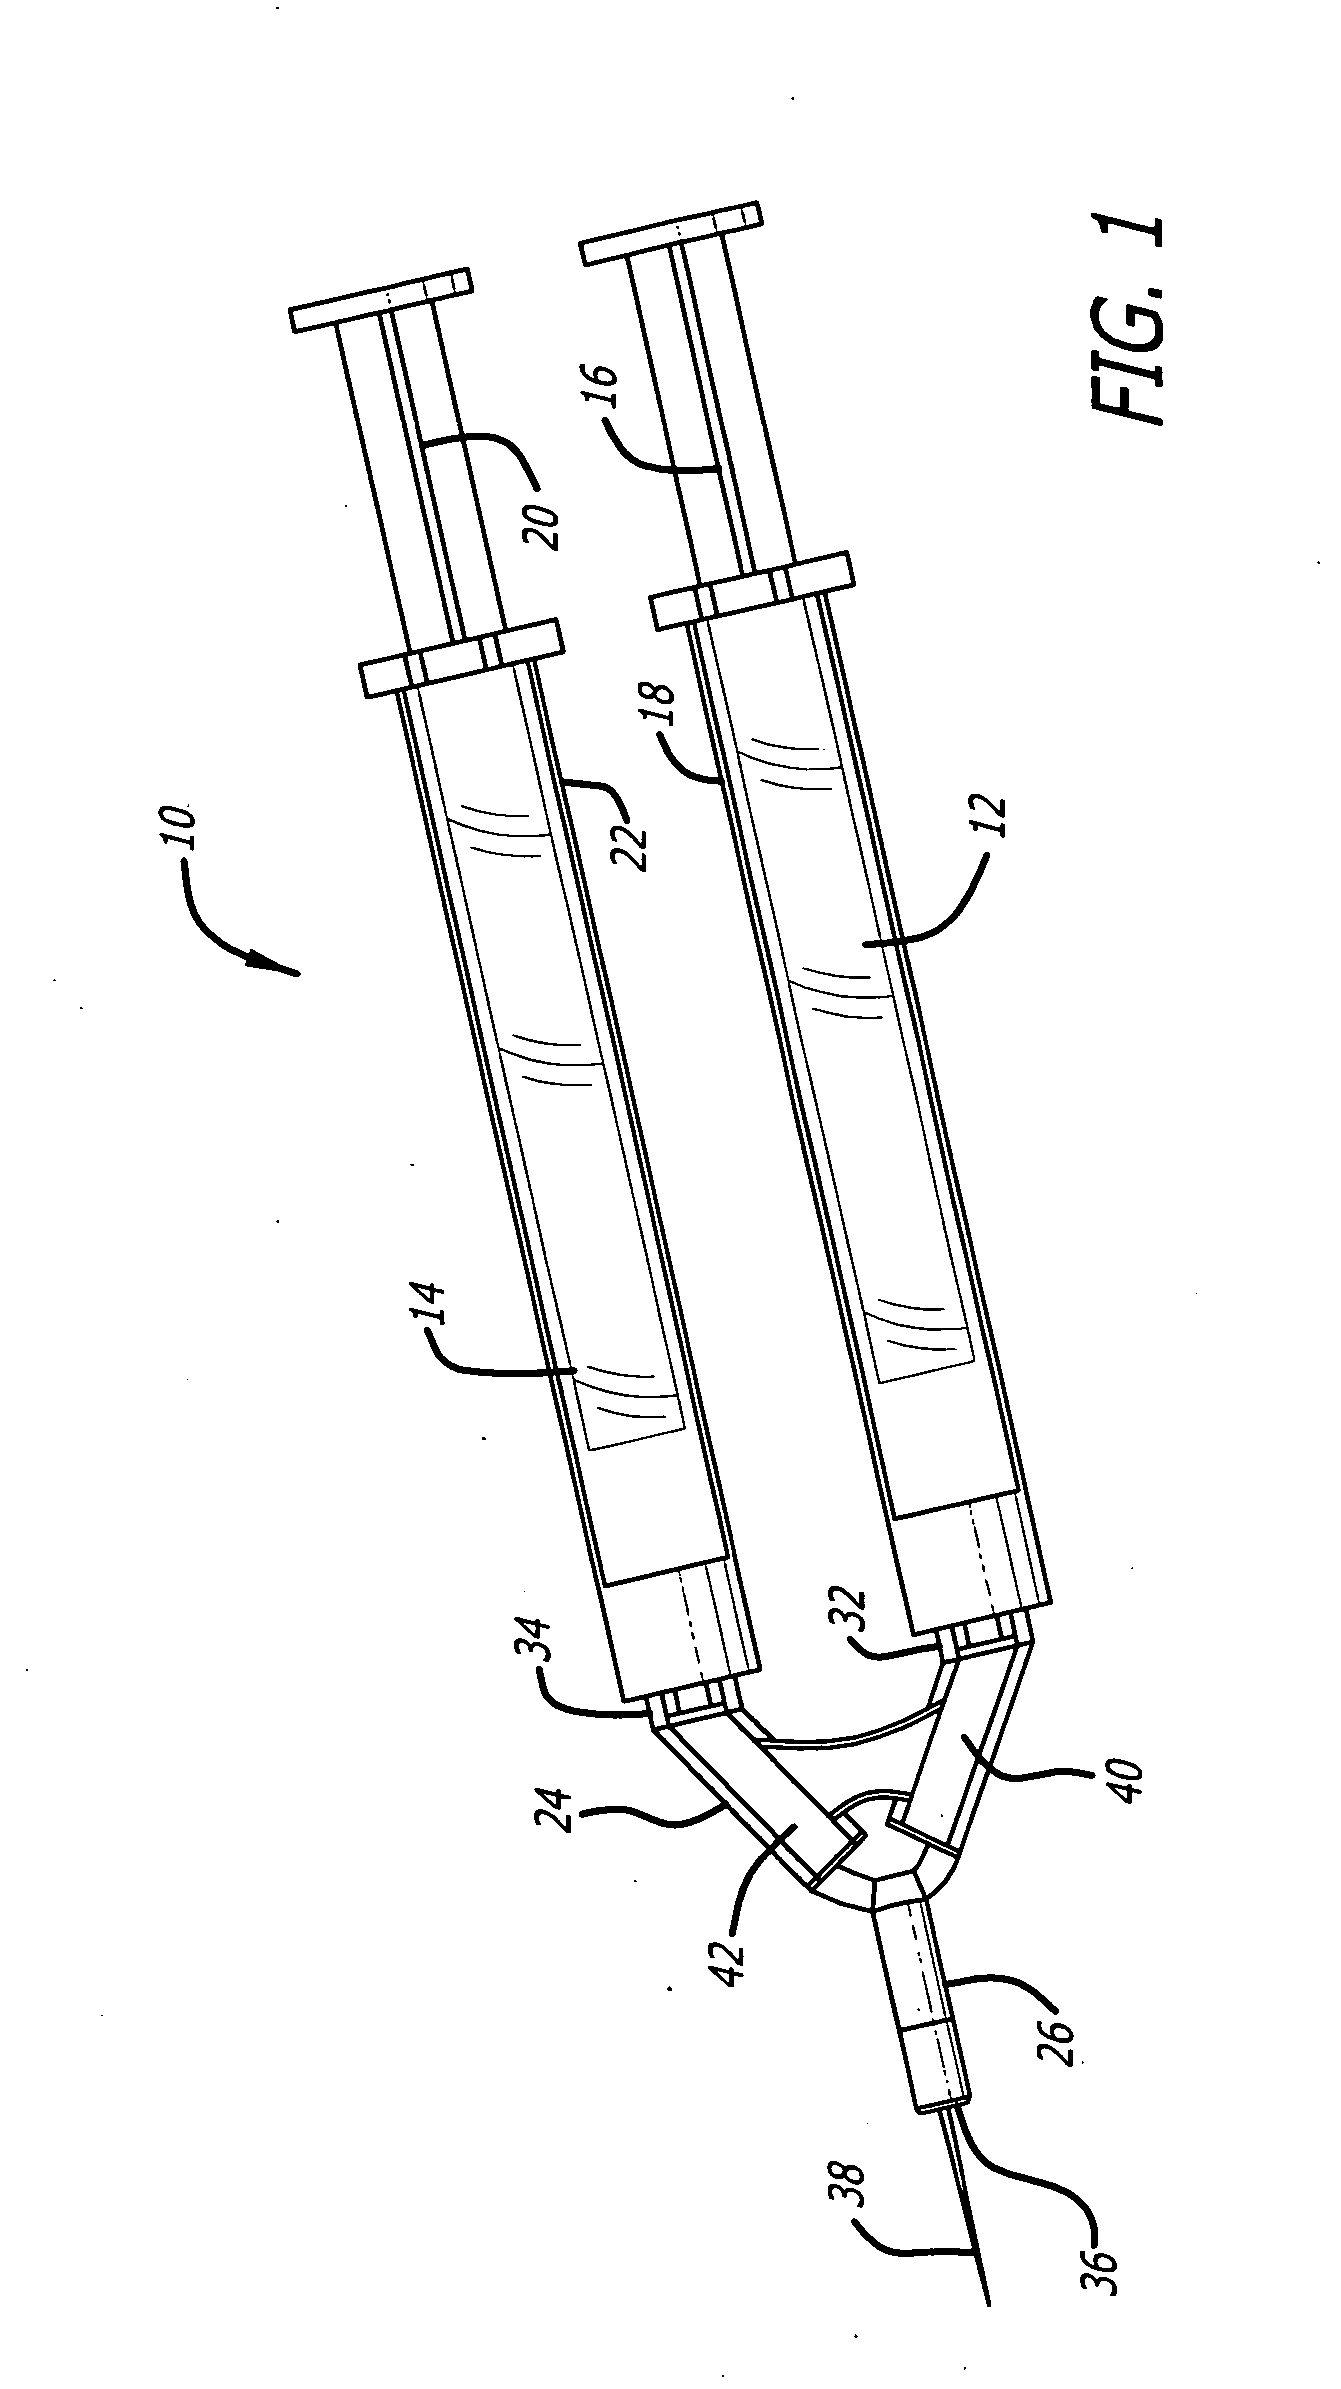 Dual syringe assembly